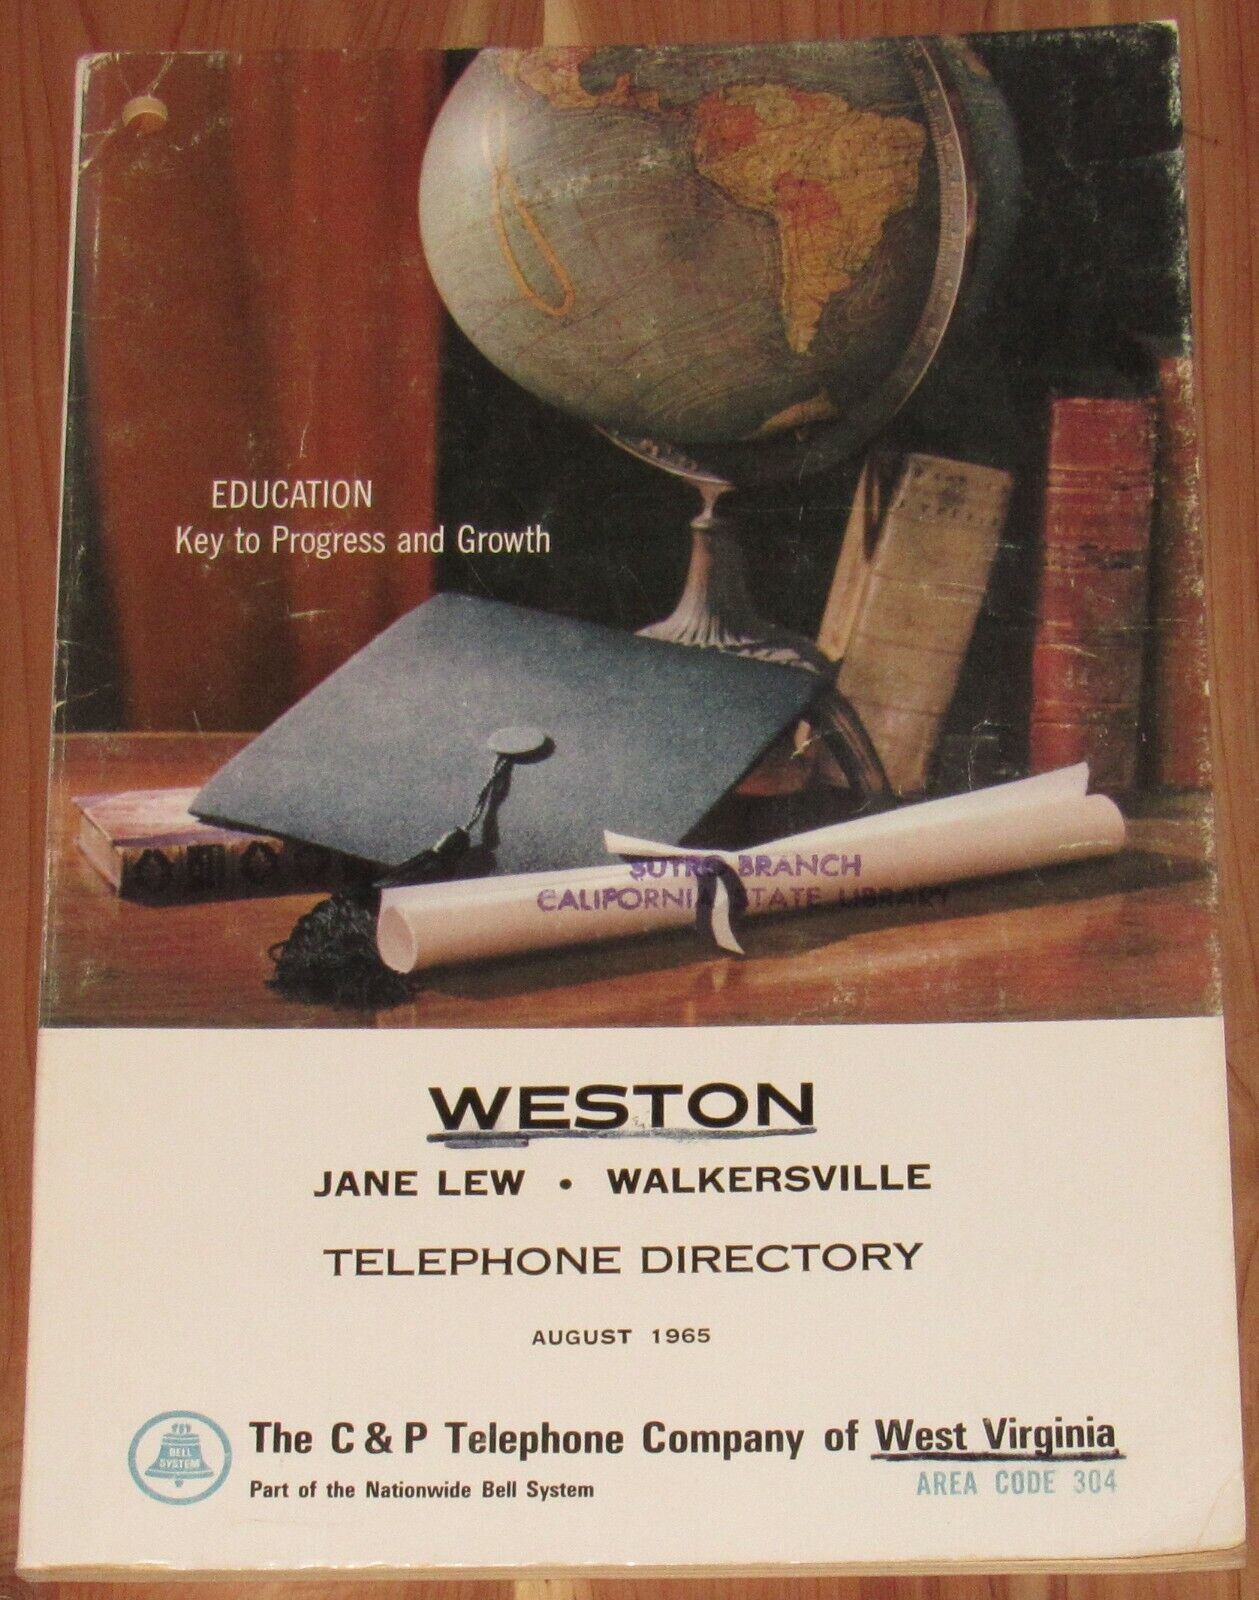 1965 WEST VIRGINIA TELEPHONE DIRECTORY, WESTON, JANE LEW, WALKERSVILLE